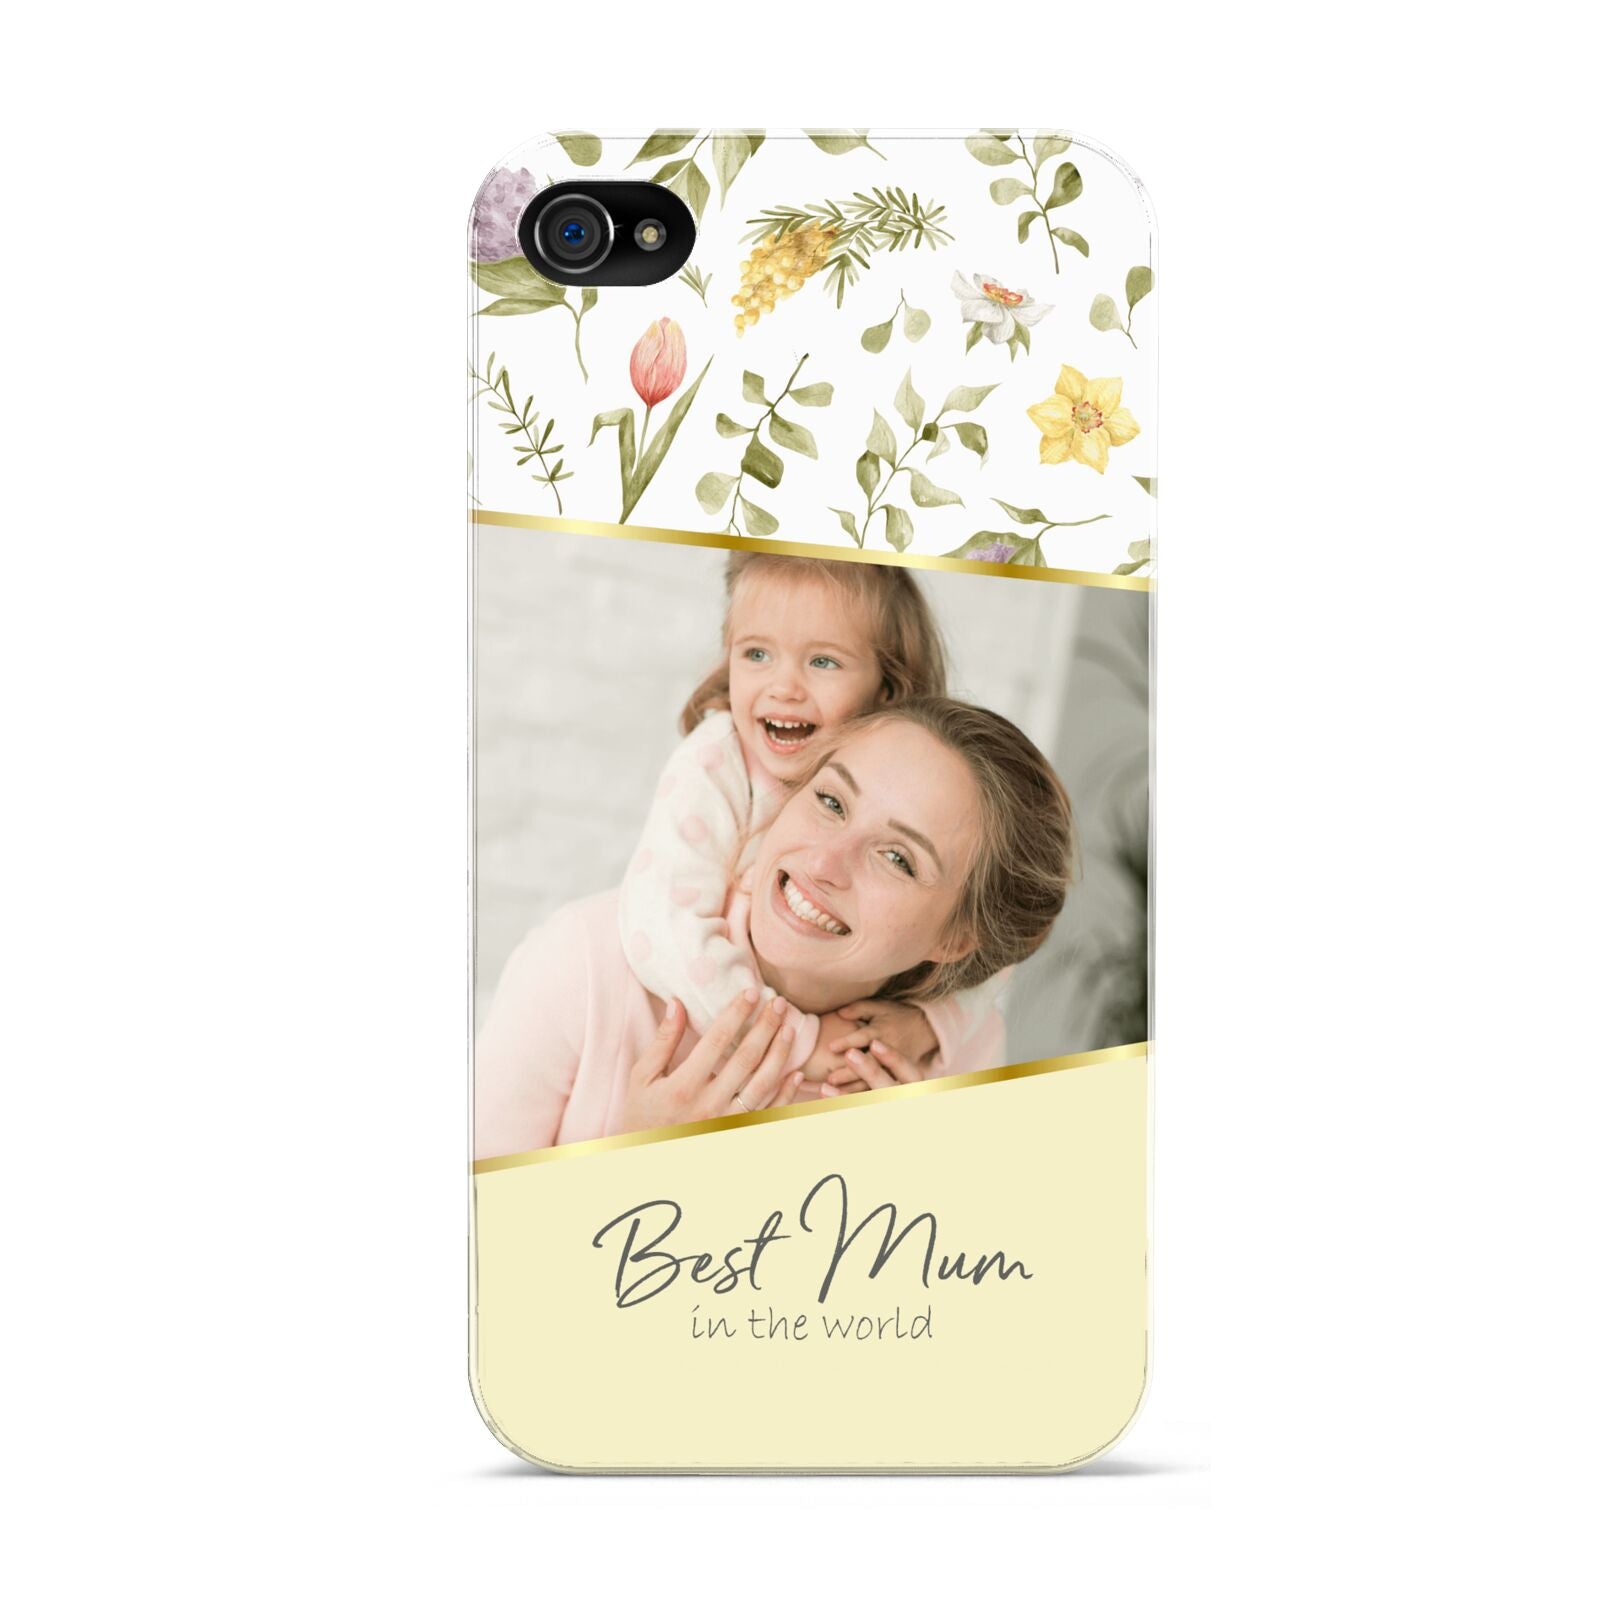 Personalised Best Mum Apple iPhone 4s Case